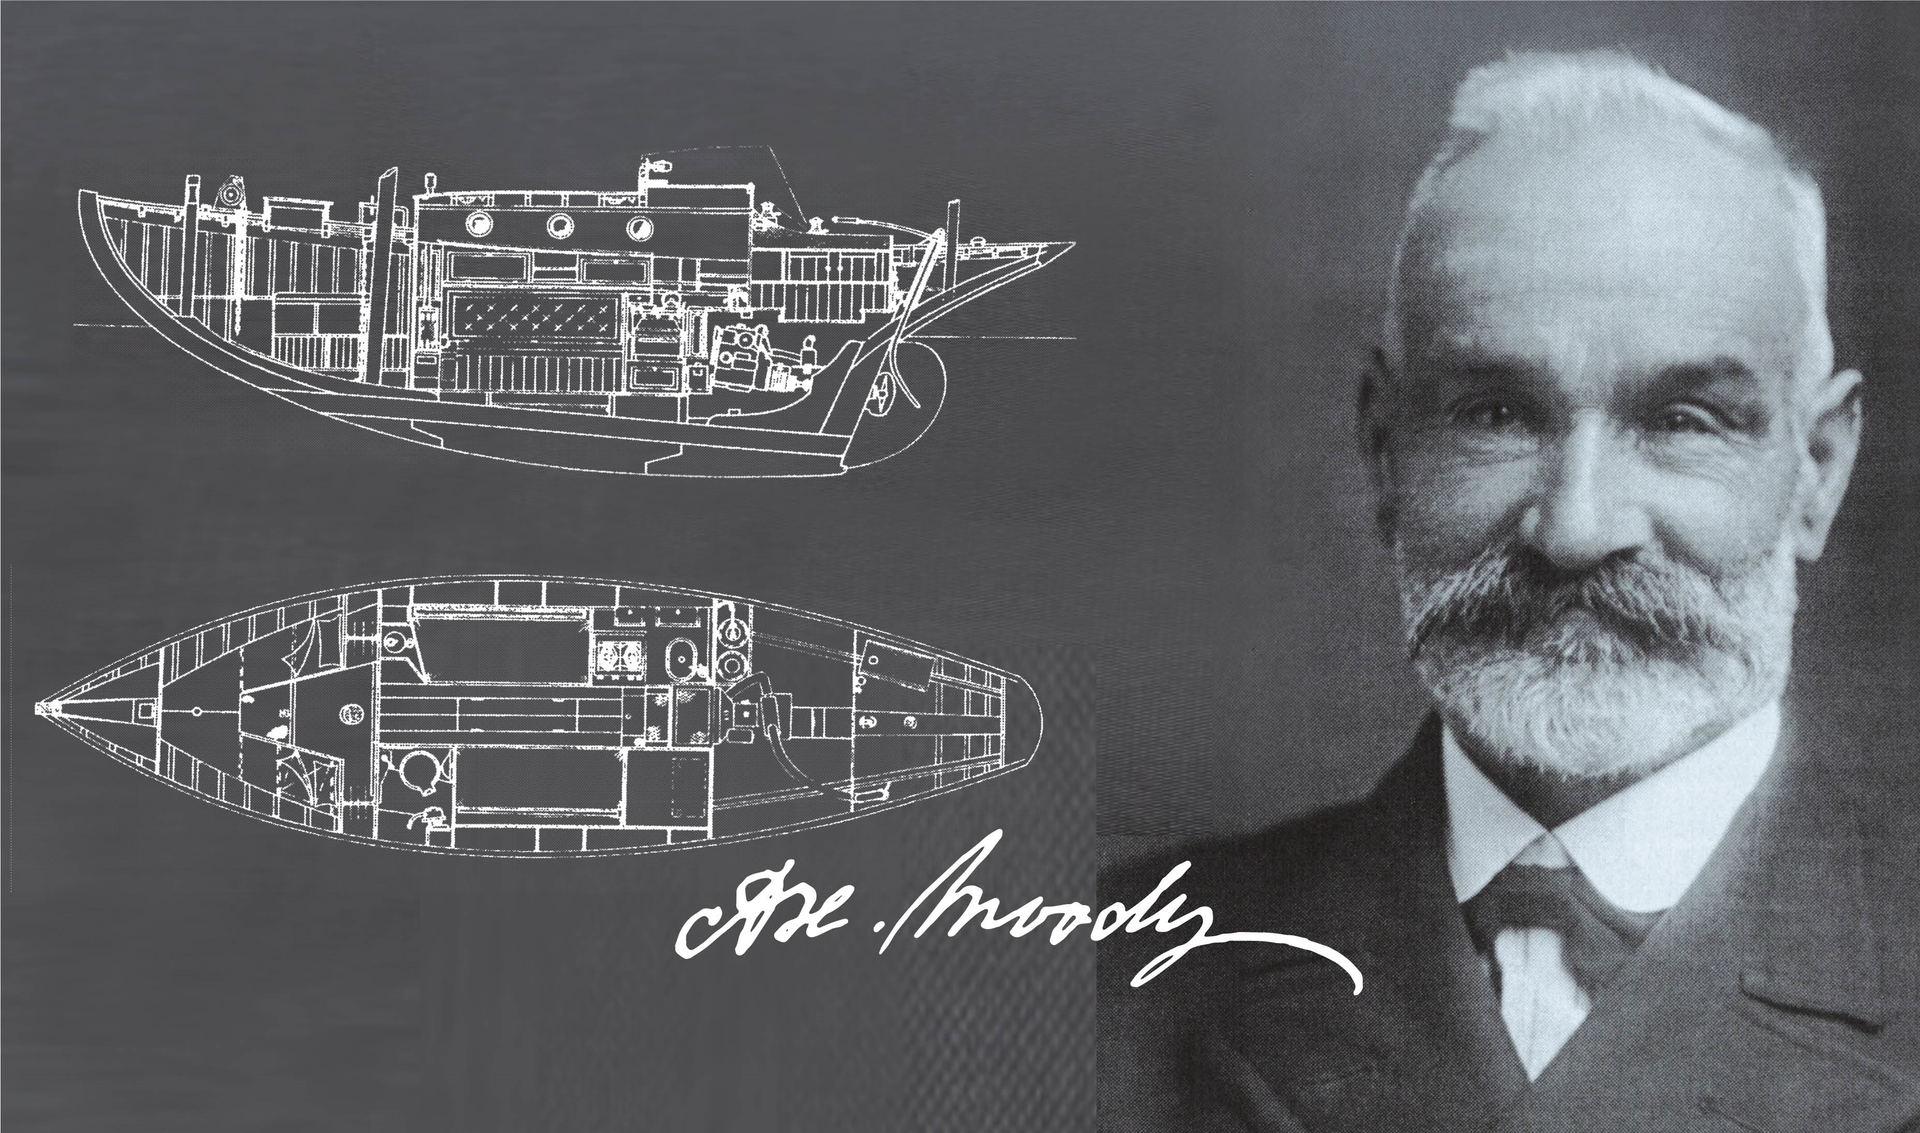 История парусных яхт Moody - одного из старейших брендов парусных яхт в мире